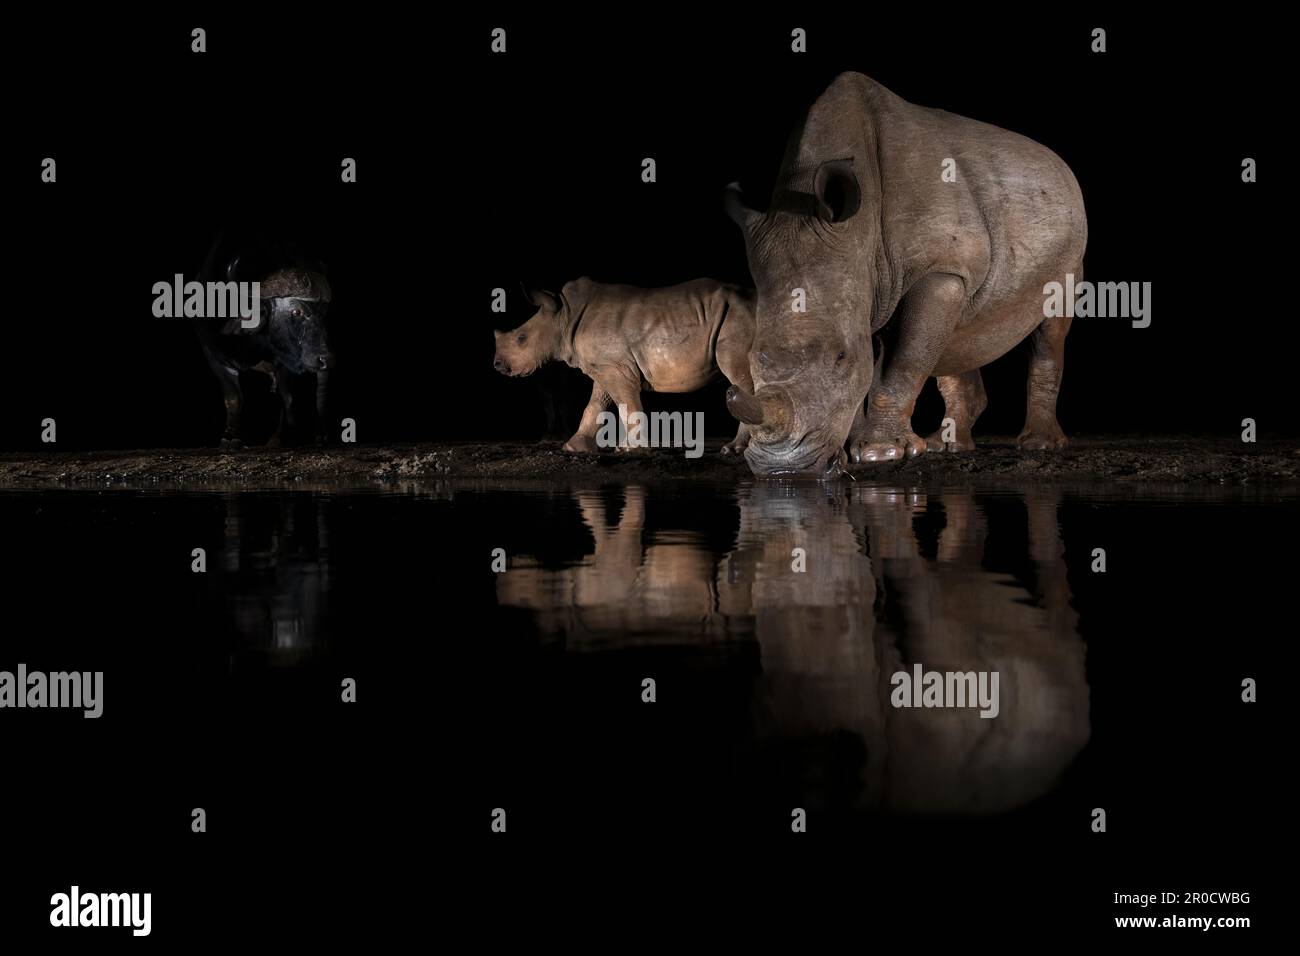 Vacca al rinoceronte bianco (Ceratotherium simum) con vitello di notte, riserva di caccia Zimanga, KwaZulu-Natal, Sudafrica Foto Stock